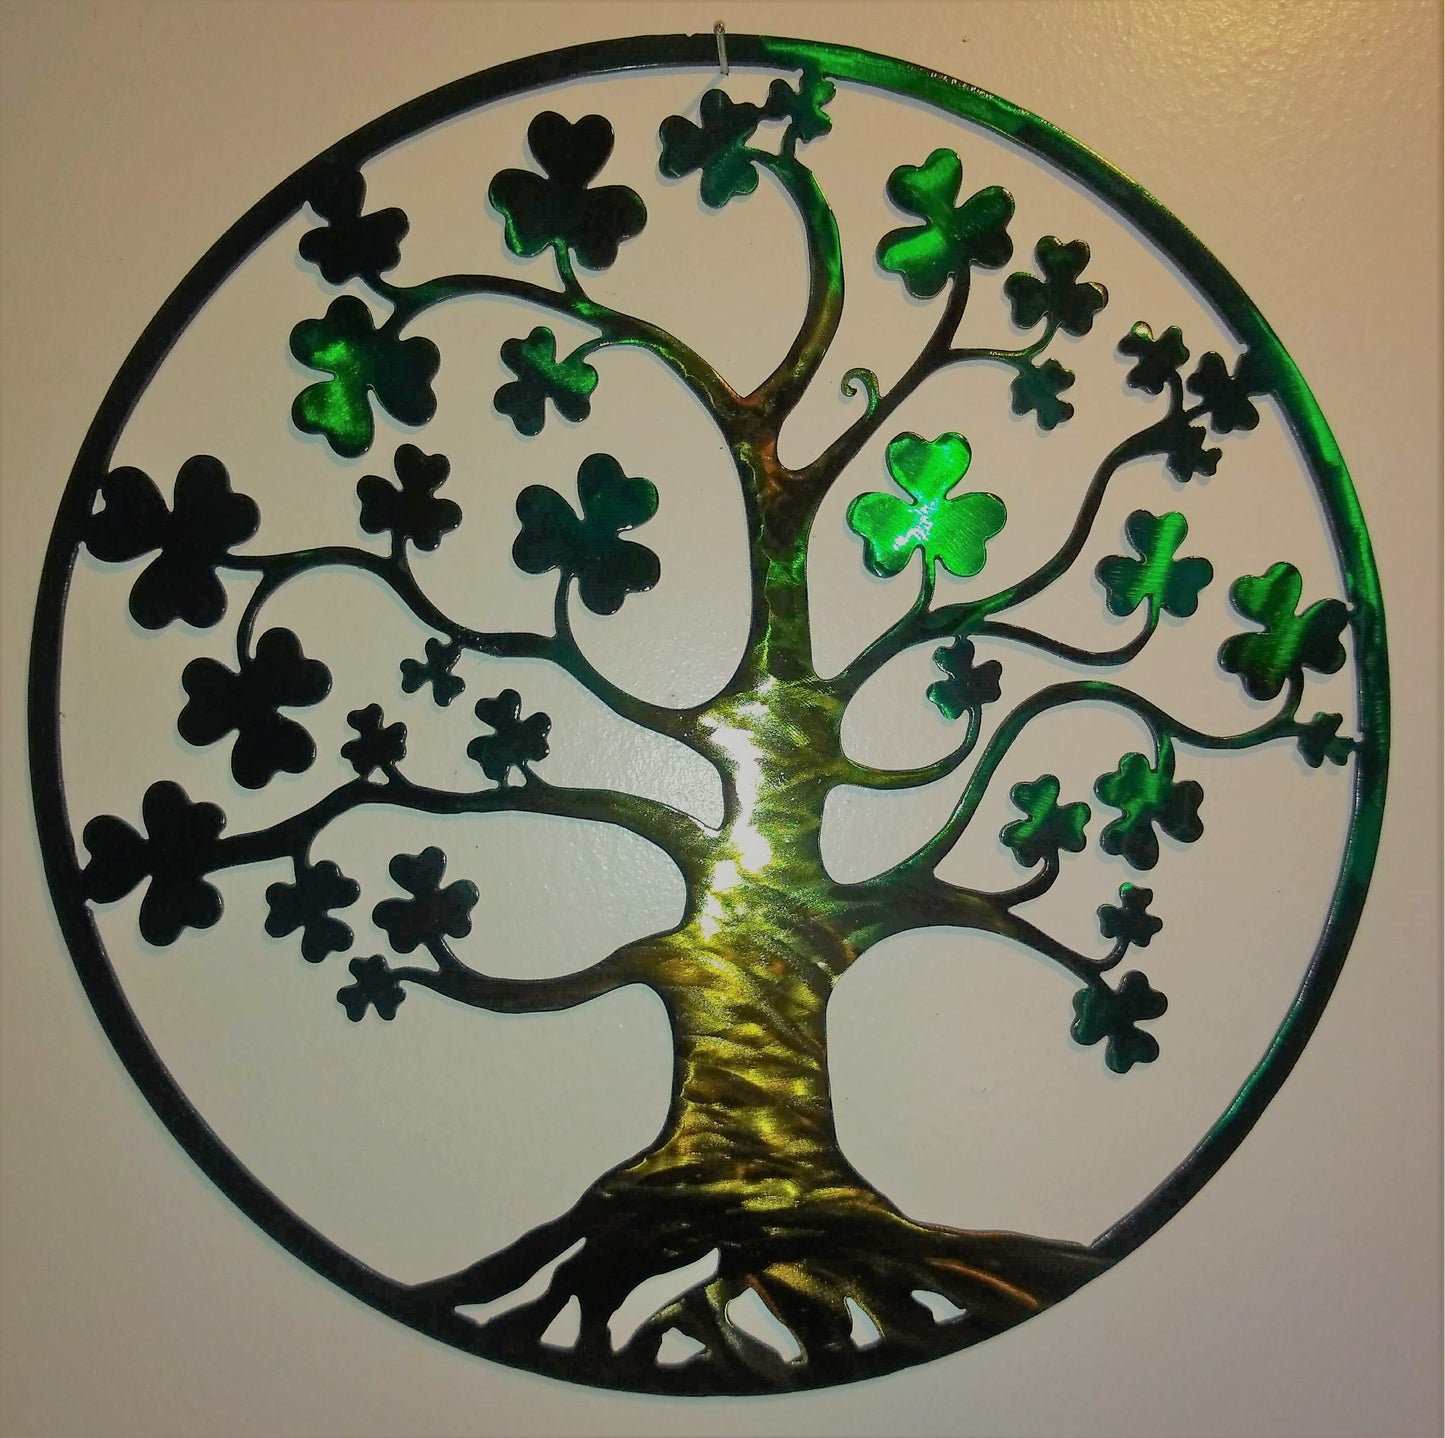 Tree of Life - Irish with Shamrocks